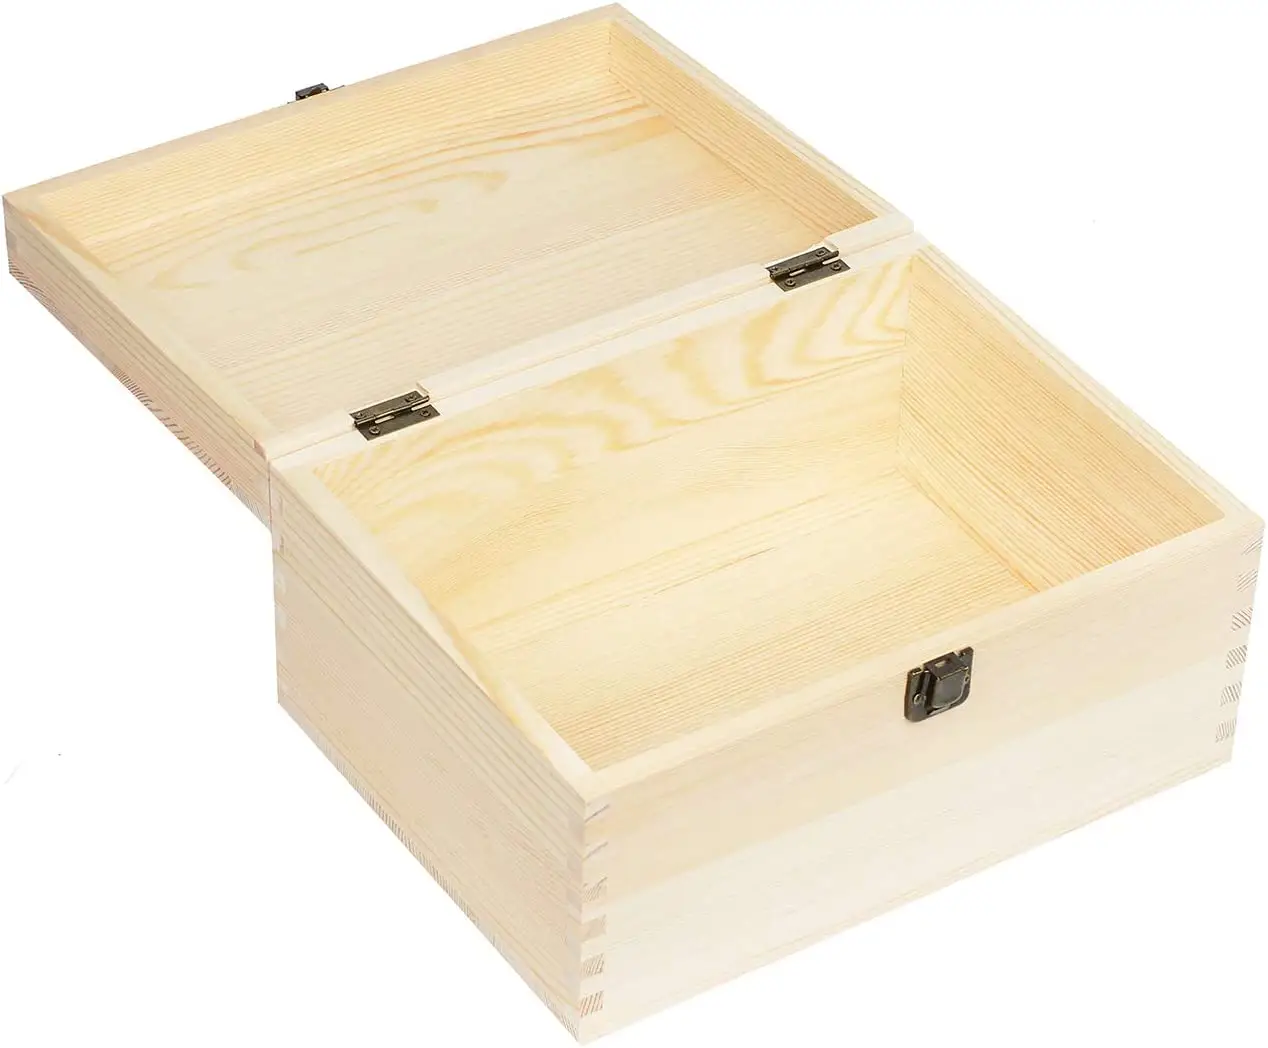 صندوق خشبي مستطيلي بمفصلات غطاء خشبي من الشركة المصنعة صناديق خشبية صغيرة مخصصة للحرف اليدوية